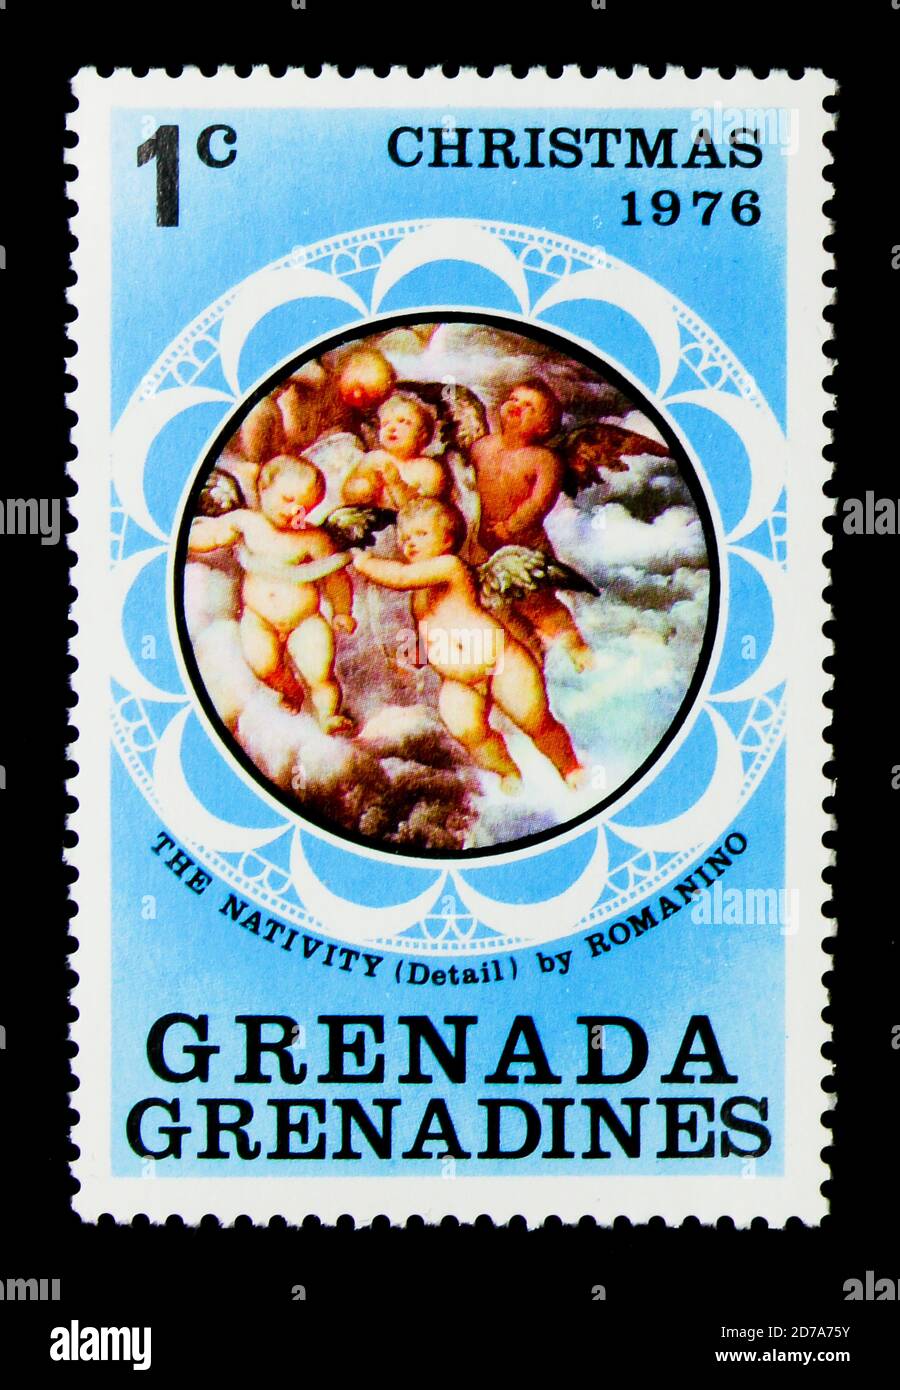 MOSKAU, RUSSLAND - 26. NOVEMBER 2017: Eine Briefmarke gedruckt in Grenada, Grenadinen zeigt die Geburt, von Romanino, Weihnachtsserie 1976, um 1976 Stockfoto